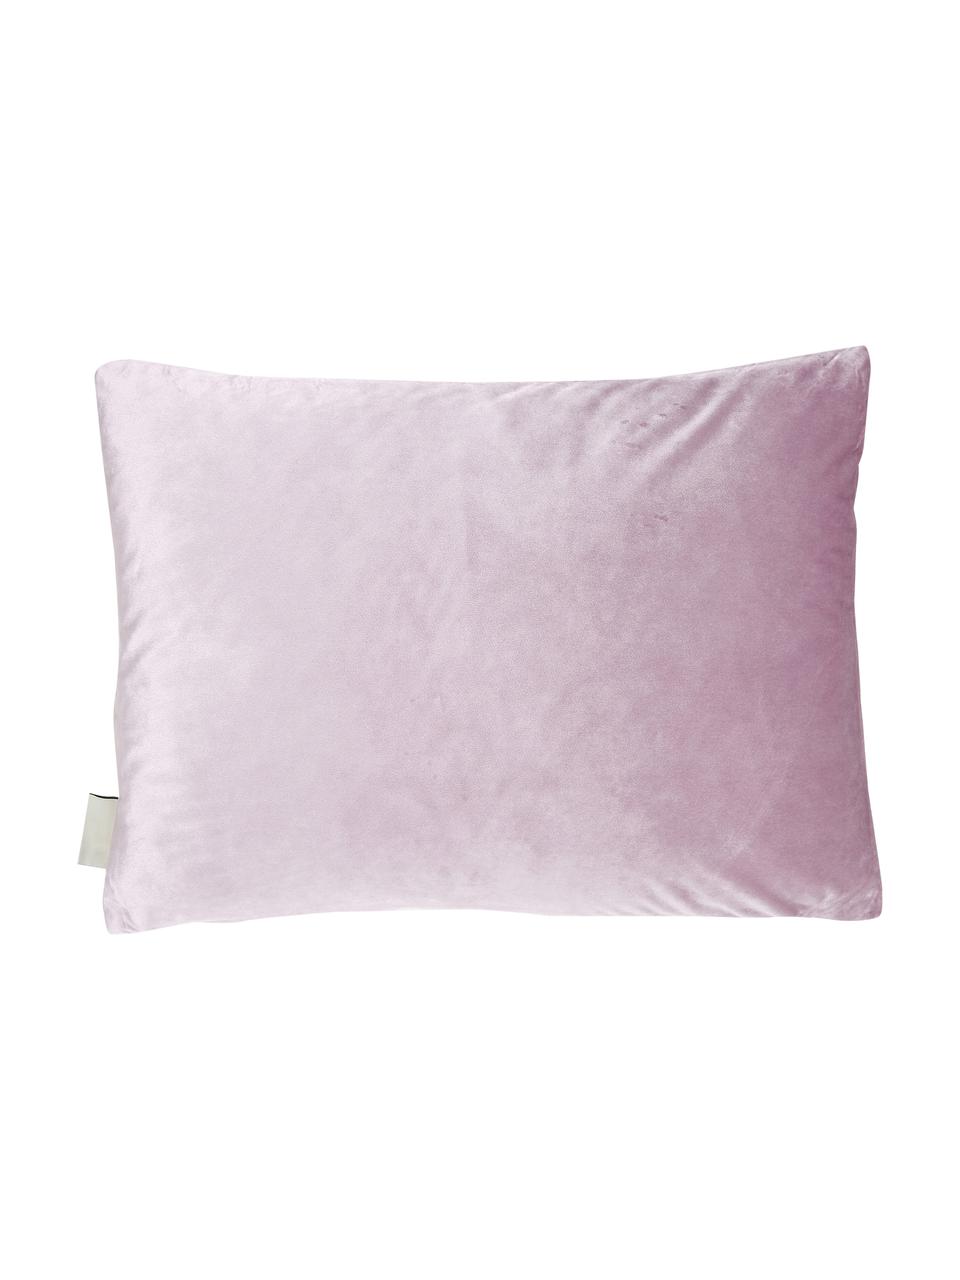 Haftowana poduszka z aksamitu  z wypełnieniem Trole, 100% aksamit (poliester), Różowy, odcienie srebrnego, S 40 x D 60 cm